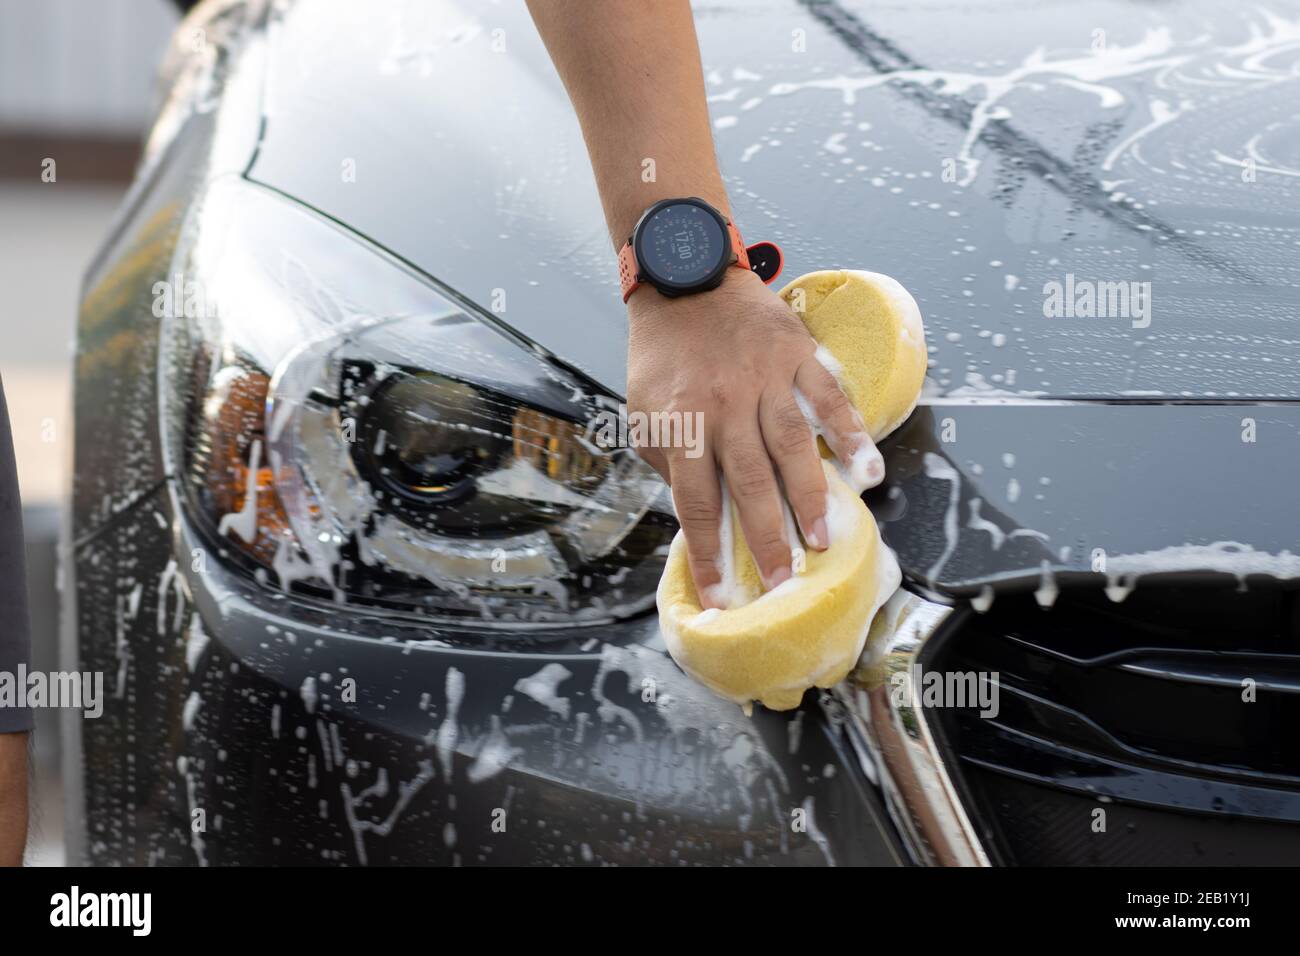 Laver la voiture à la main à l'eau savonneuse. L'homme nettoie la voiture avec une éponge, de l'eau et du détergent. Banque D'Images